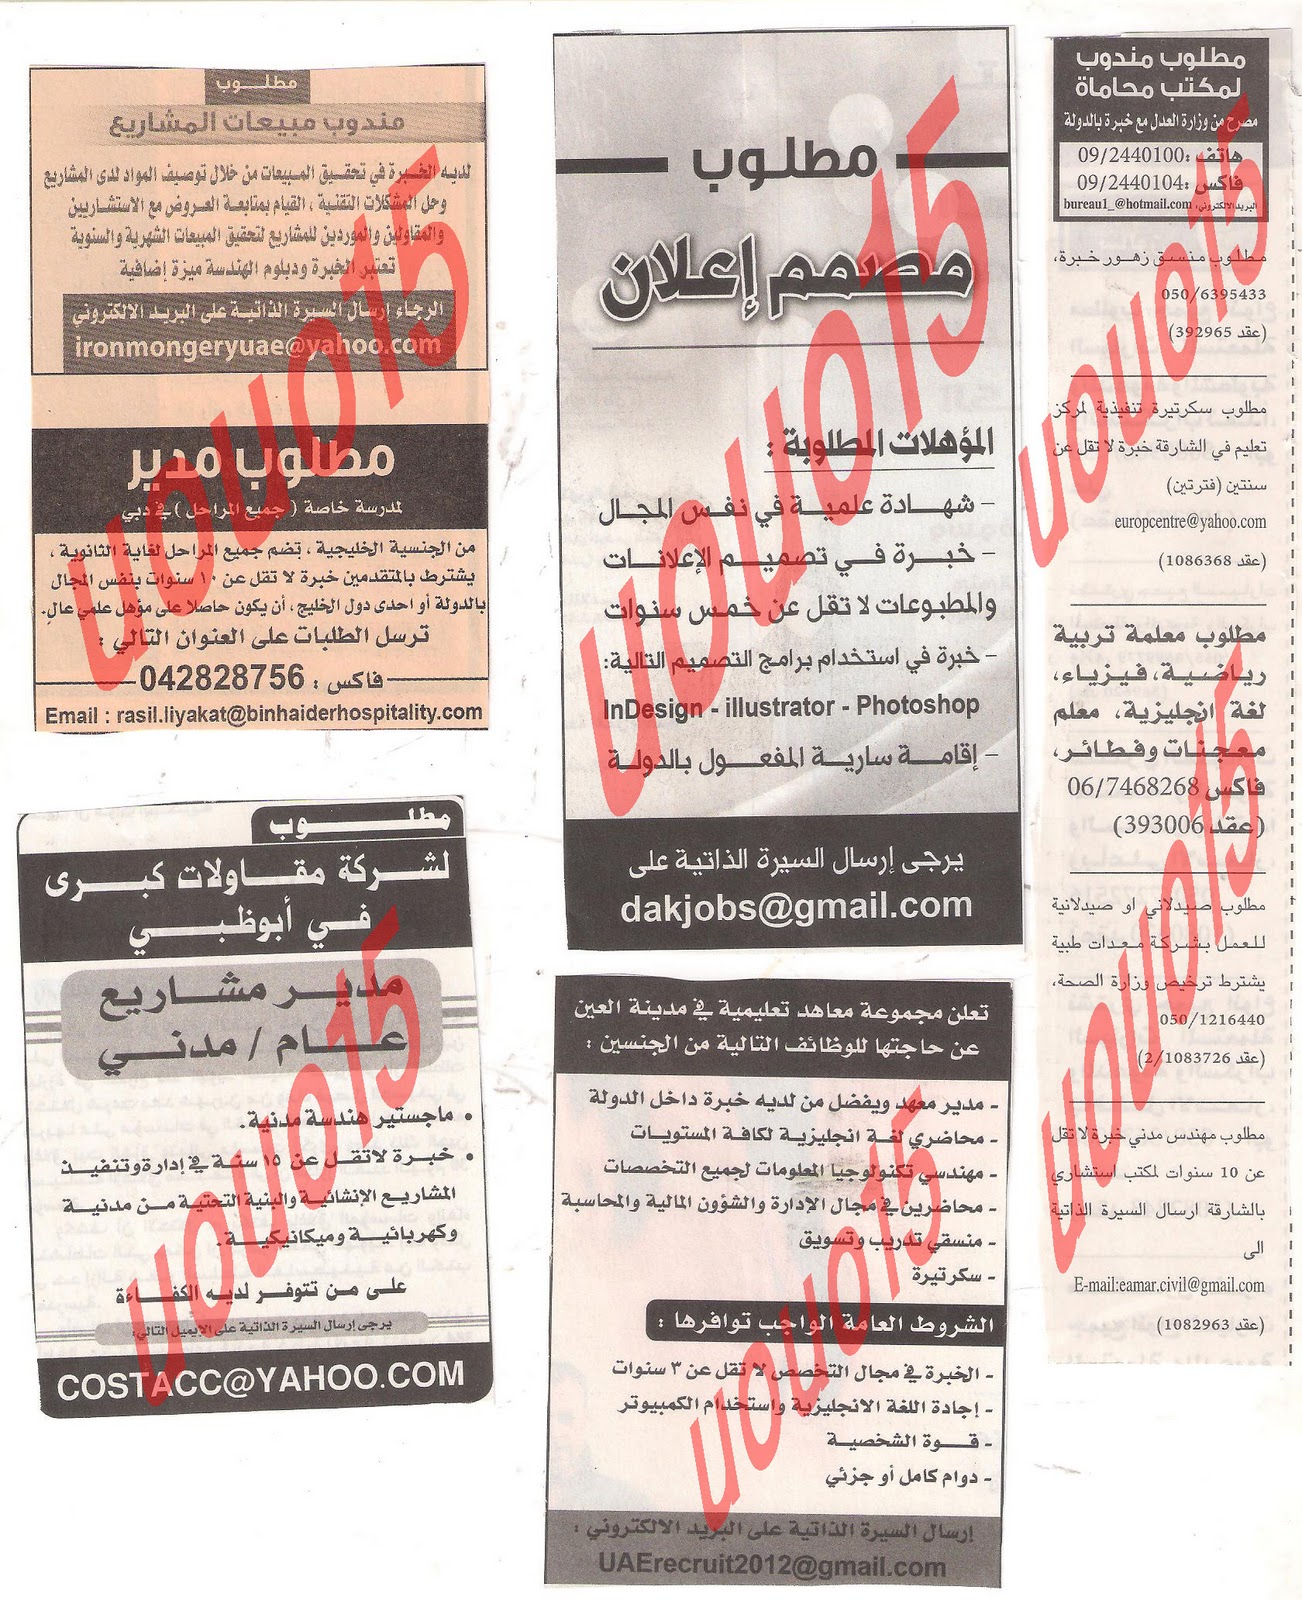 وظائف من جريدة الخليج الاربعاء 21\12\2011  Picture+006